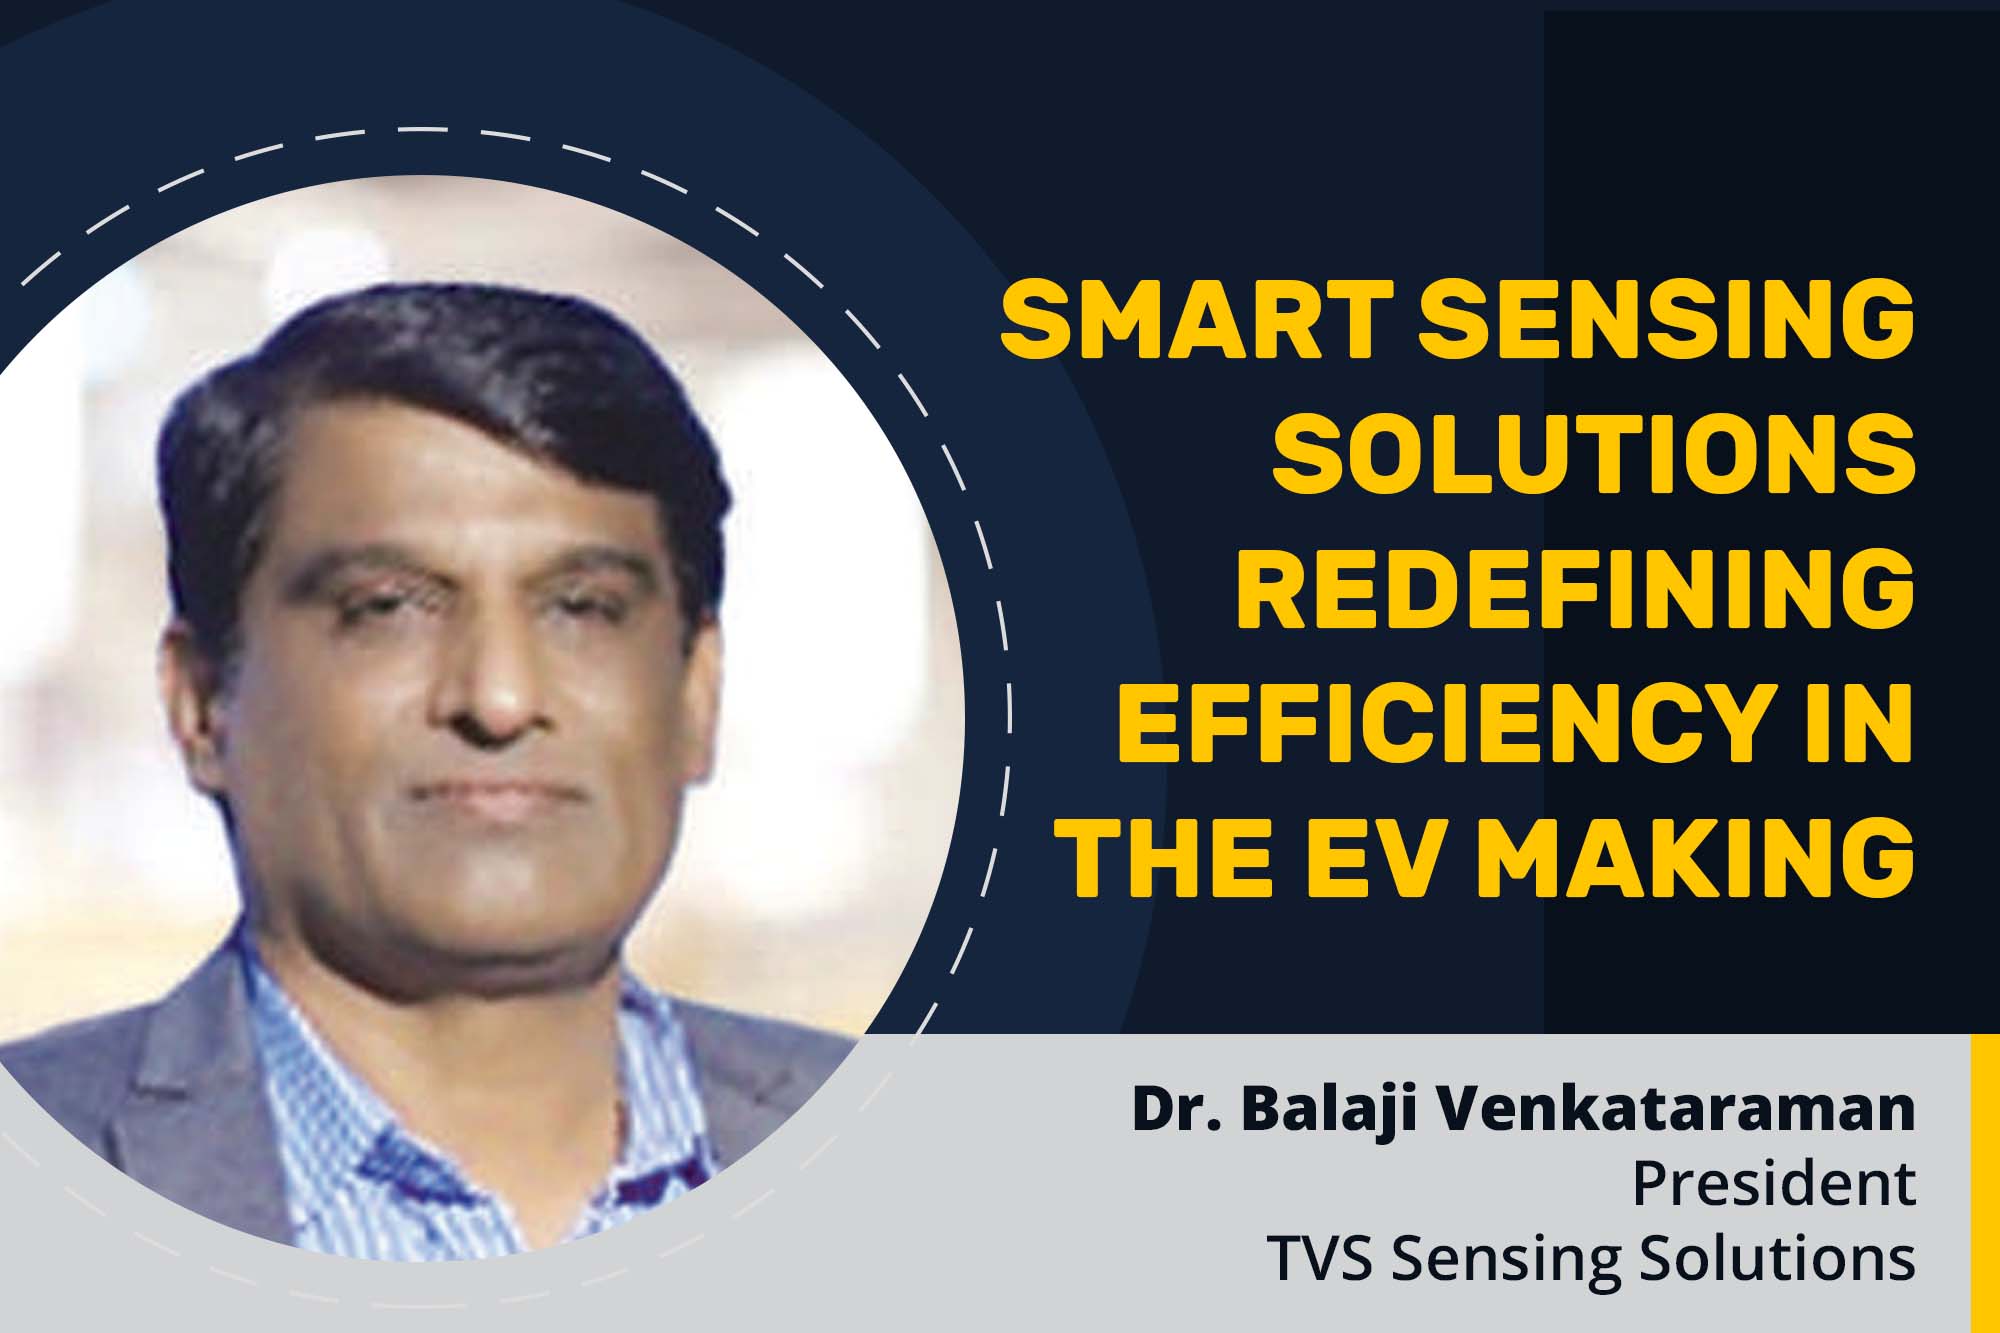 Smart Sensing Solutions redefining efficiency in the EV making